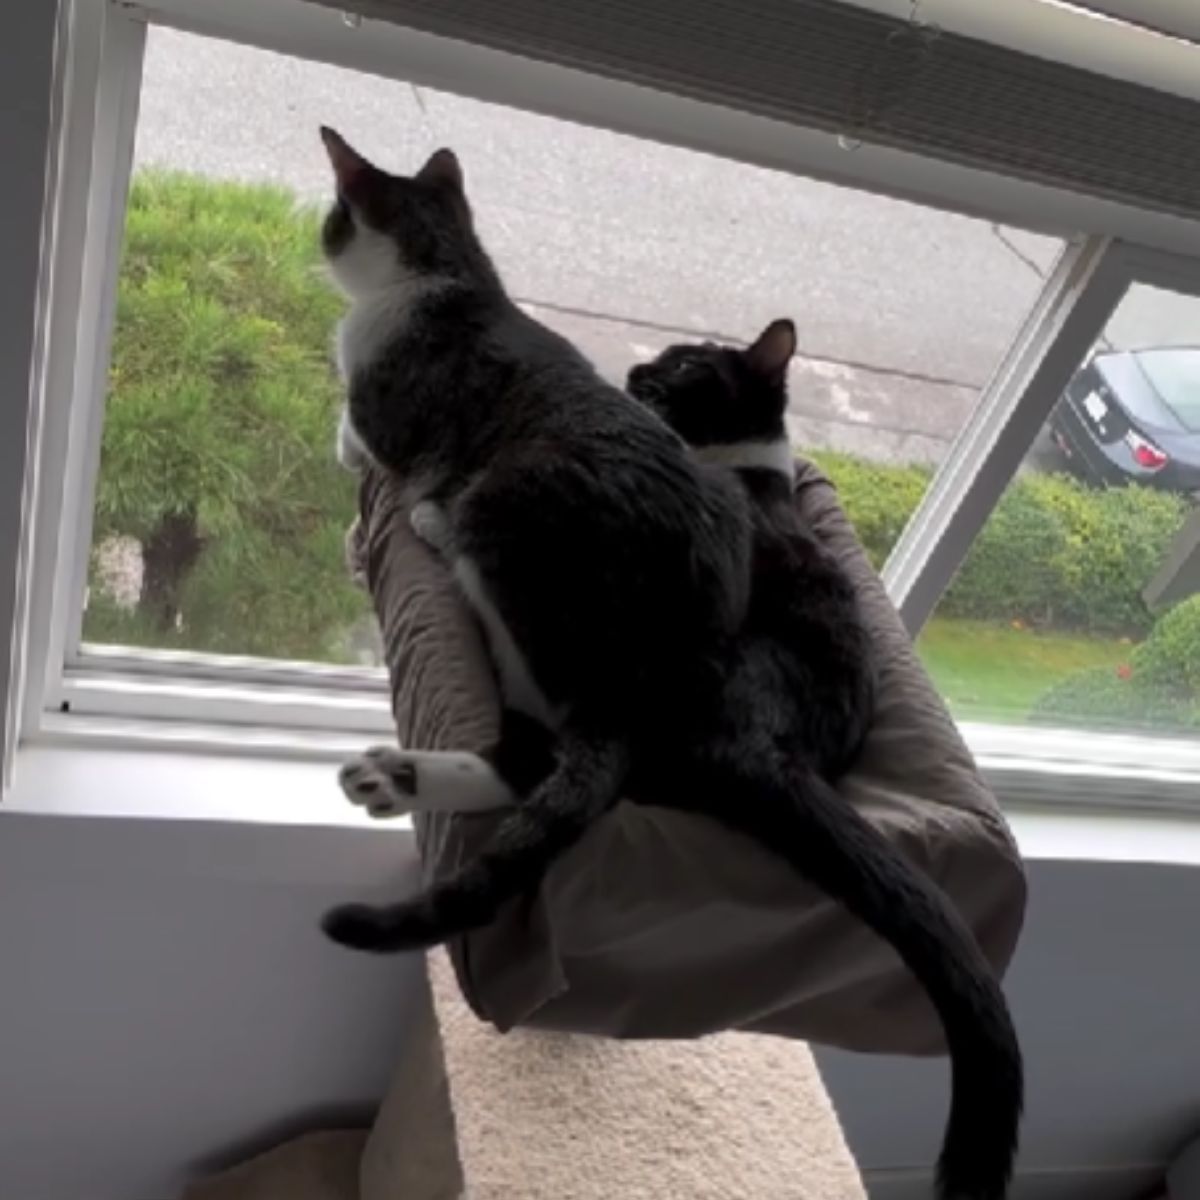 two cats watching trough window